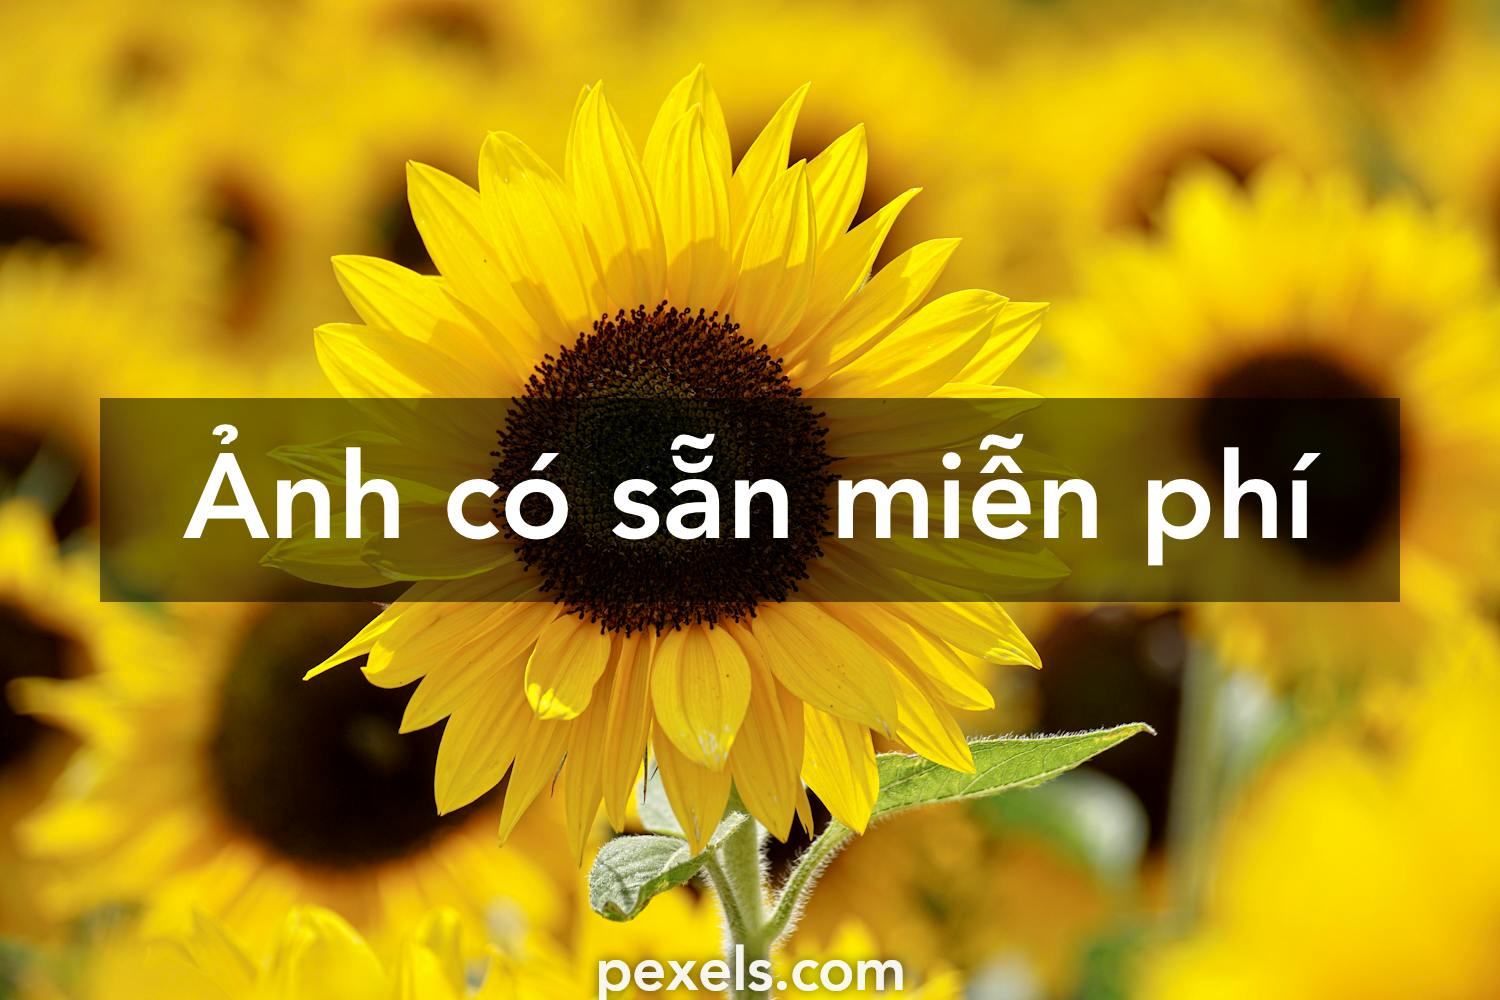 Hình vẽ hoa hướng dương đẹp tựa game Sunflowers có phải miễn phí trên Pexels không?